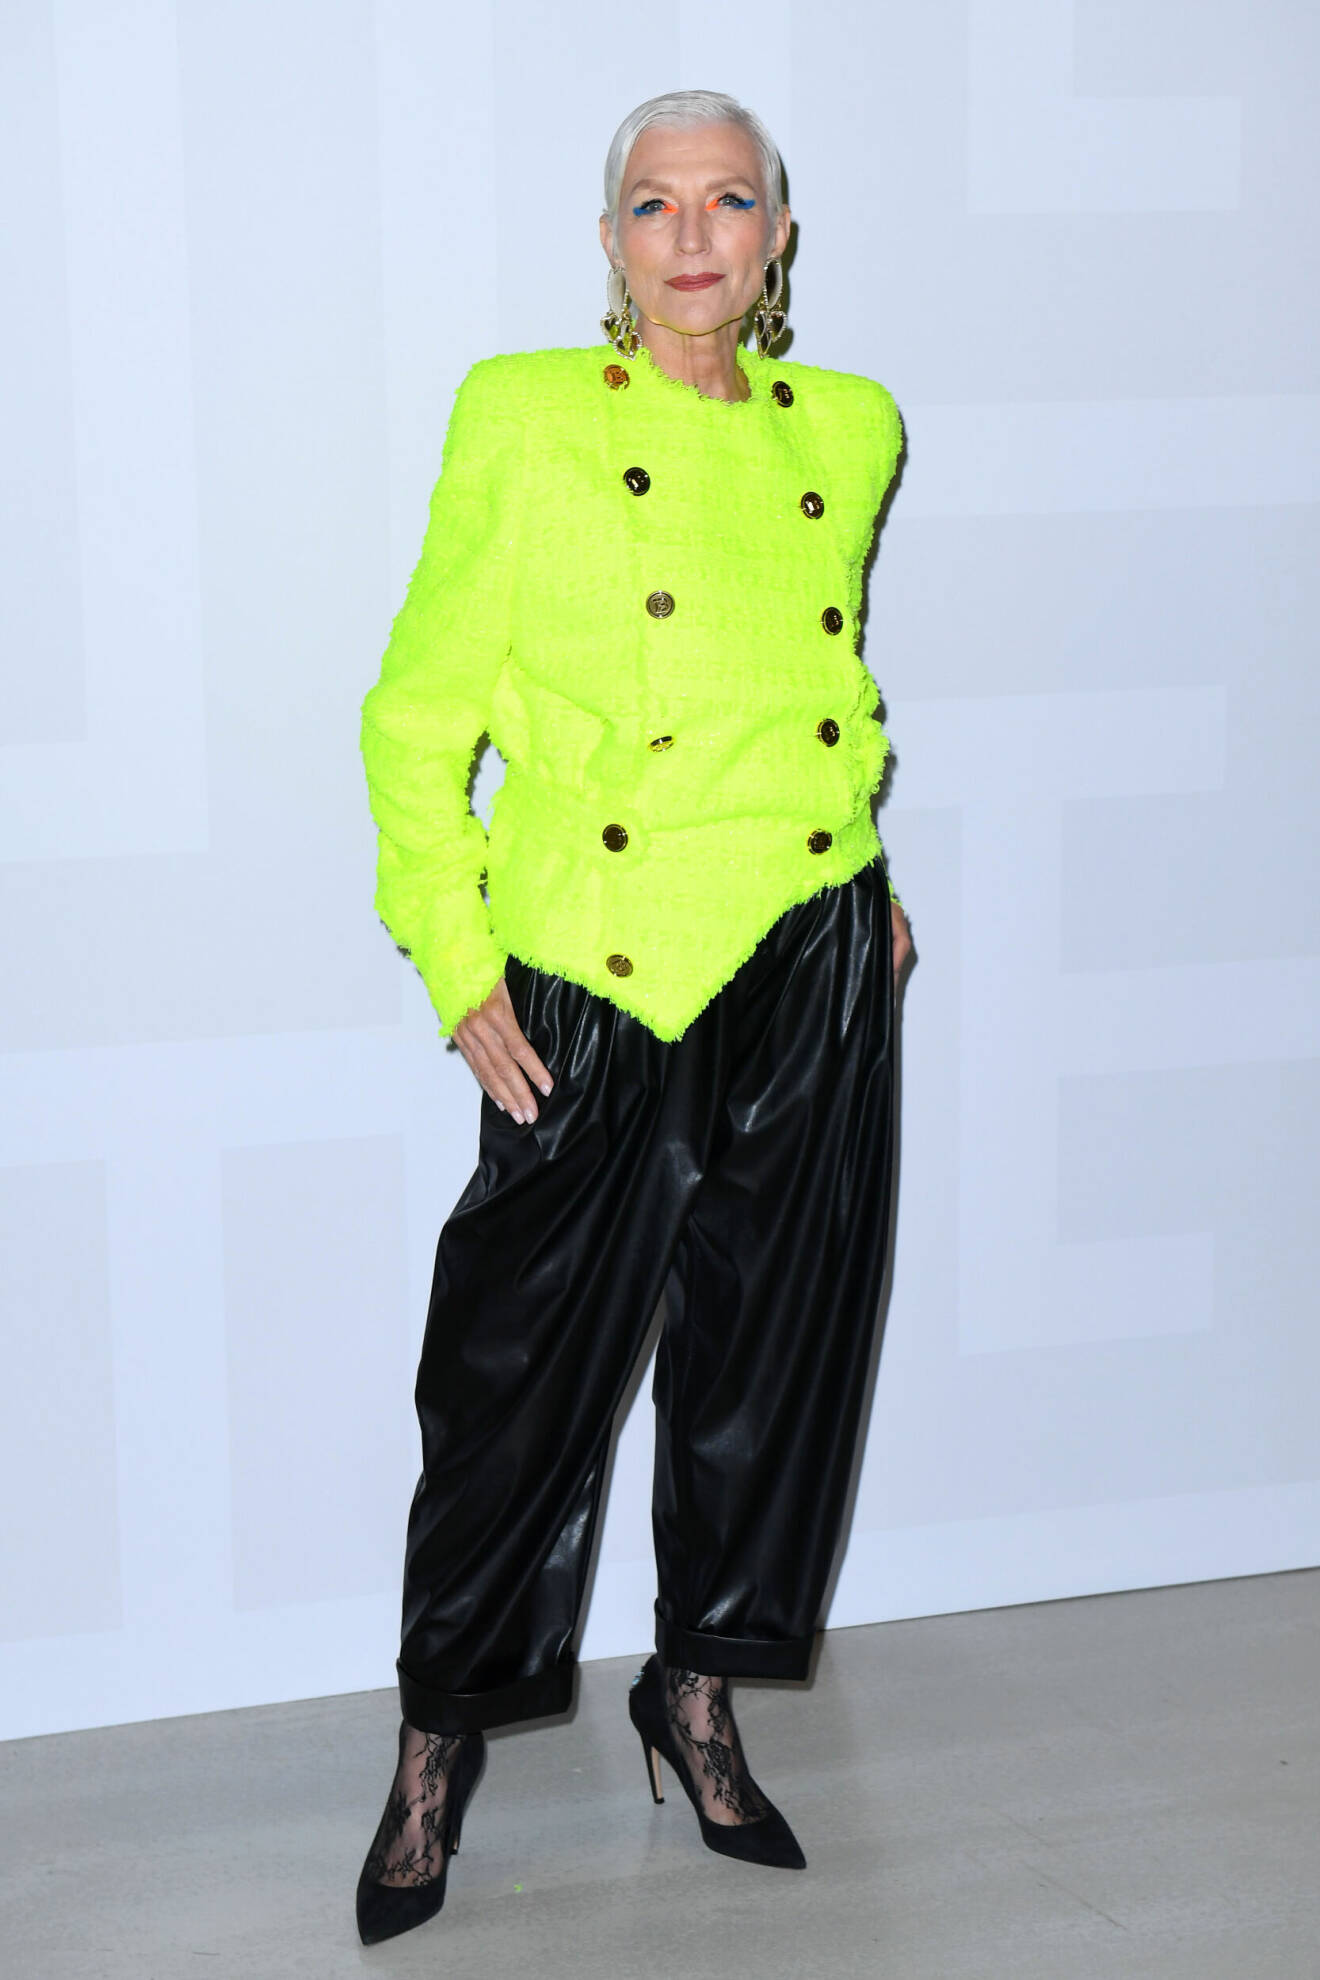 Maye Musk iklädd färgstark jacka och svarta skinnbyxor.